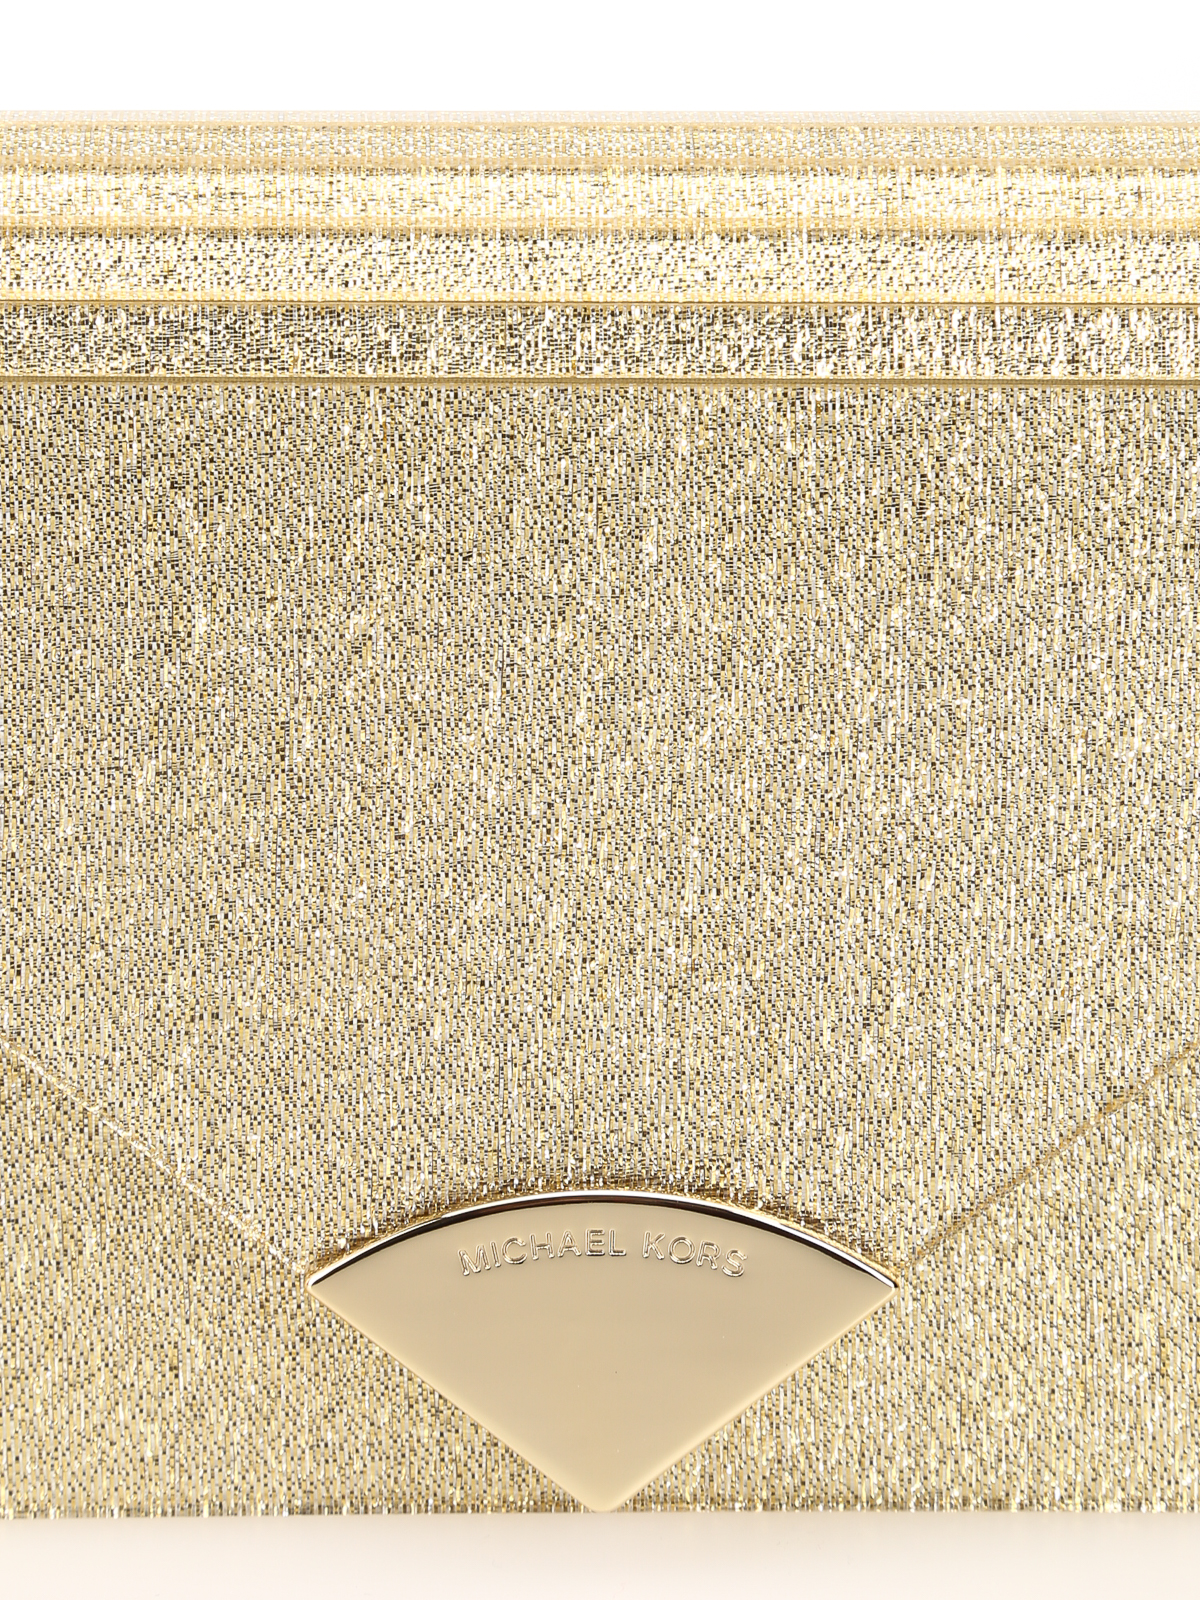 Michael Kors Barbara Gold Metallic Envelope Clutch Bag